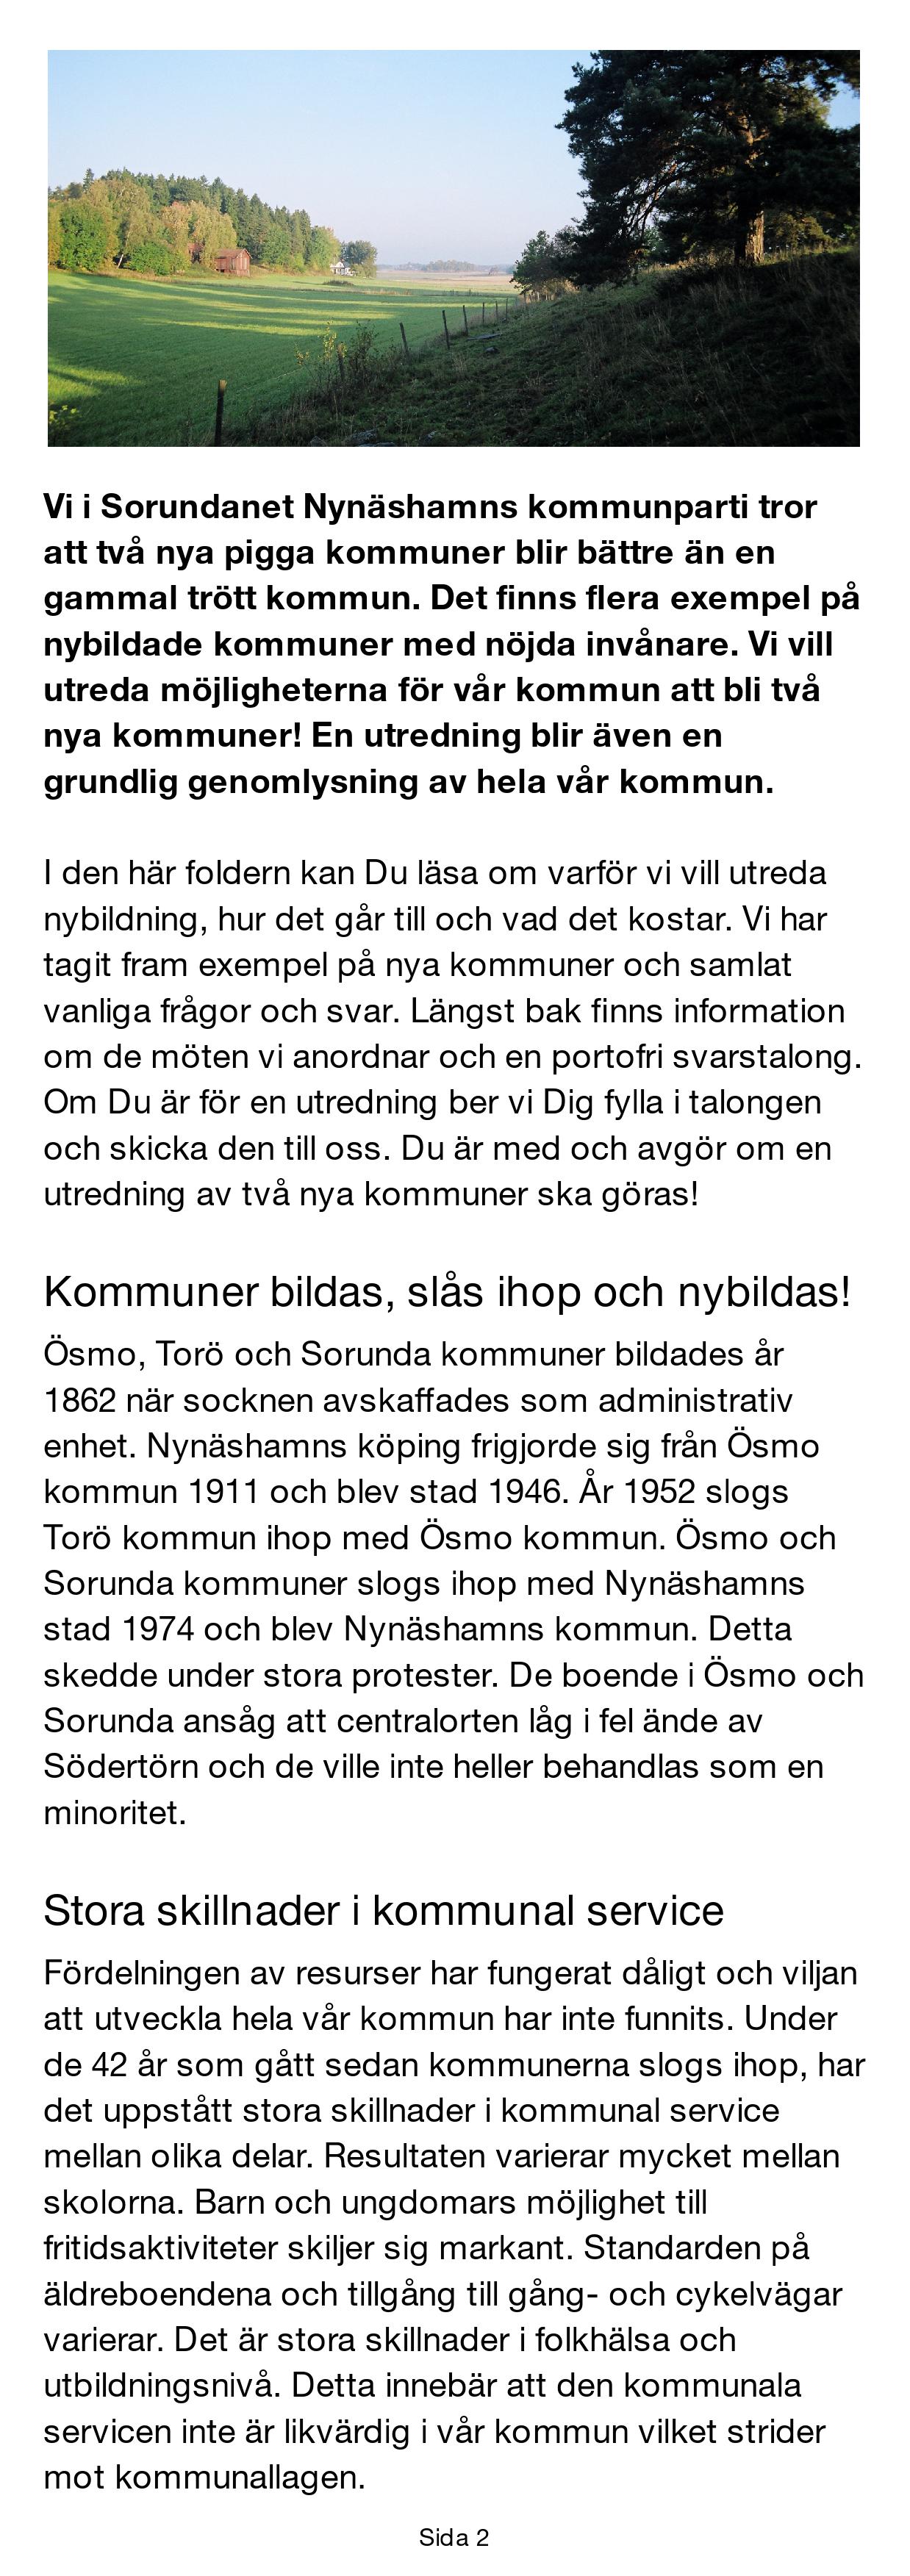 Sida 2 - Vi i Sorundanet Nynäshamns kommunparti tror att två nya pigga kommuner blir bättre än en gammal trött kommun.